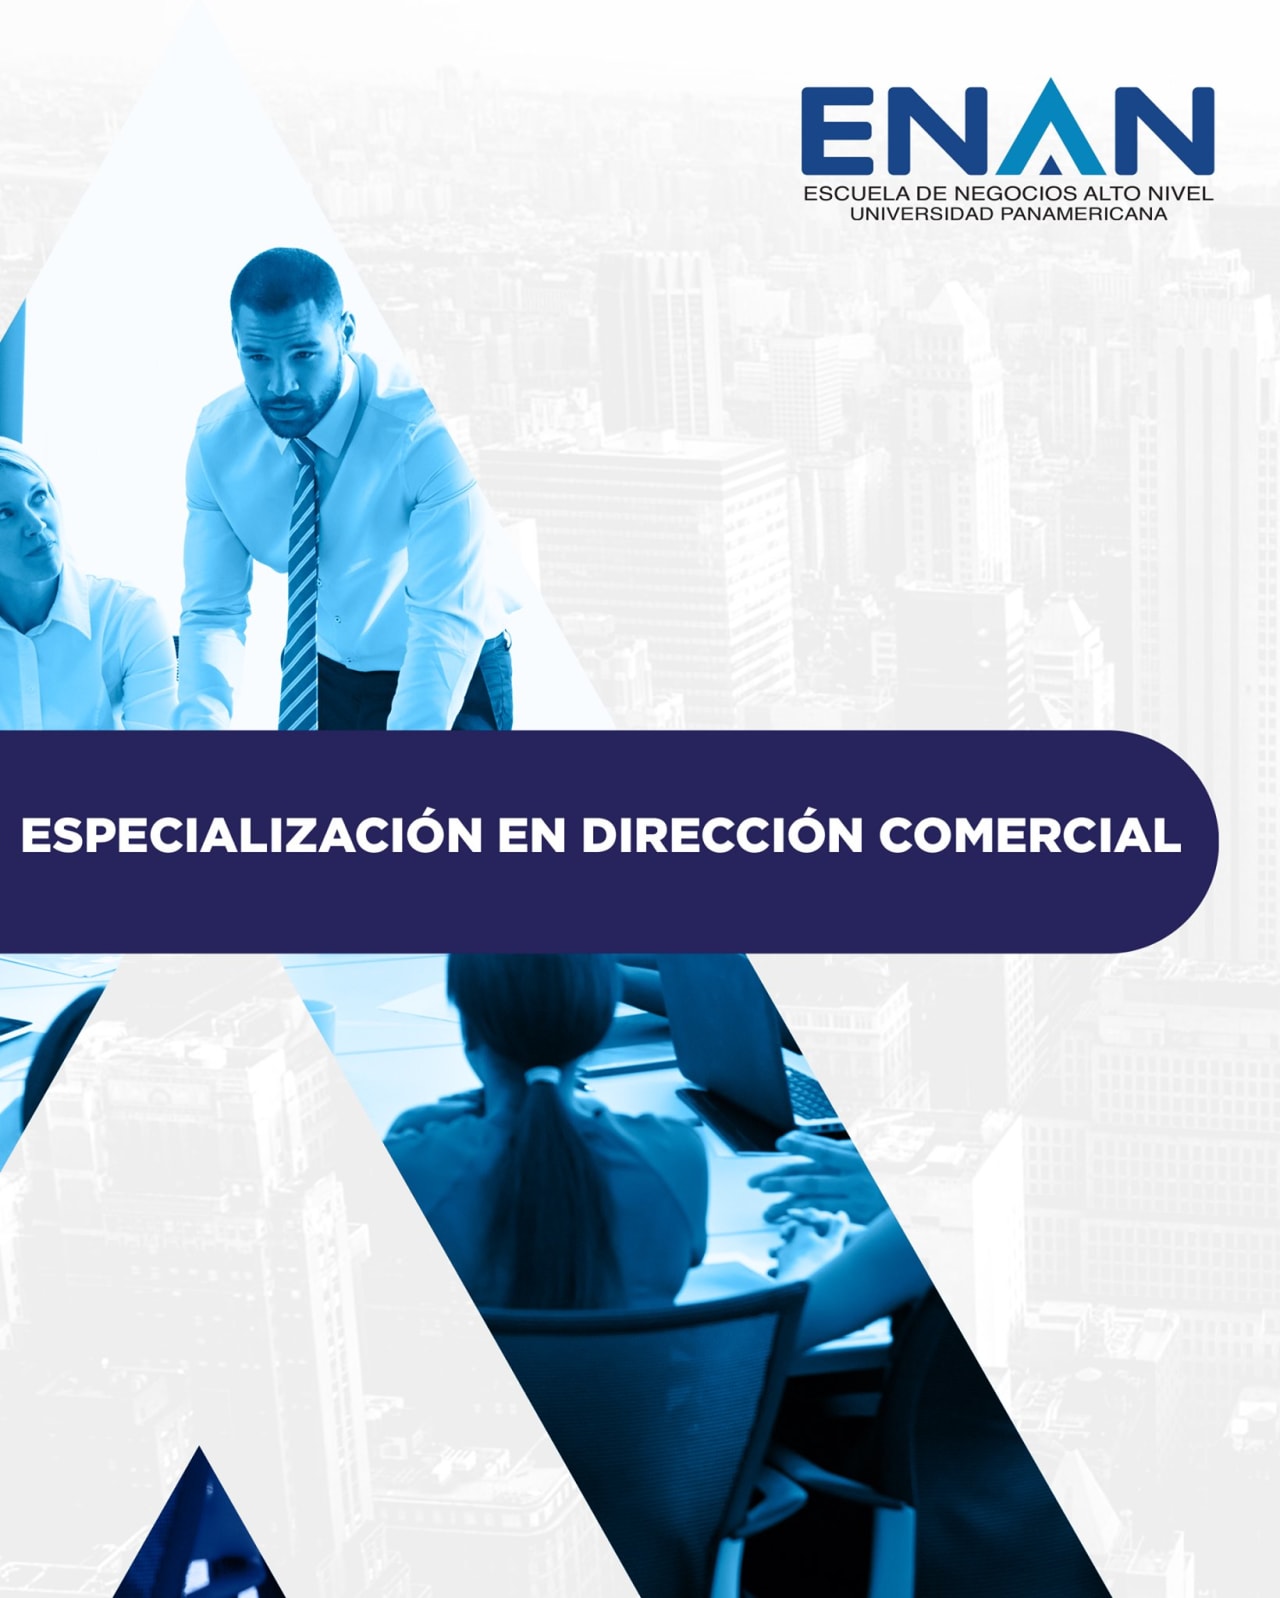 Escuela de Negocios Alto Nivel - Universidad Panamericana de Guatemala Specialization in Commercial Management